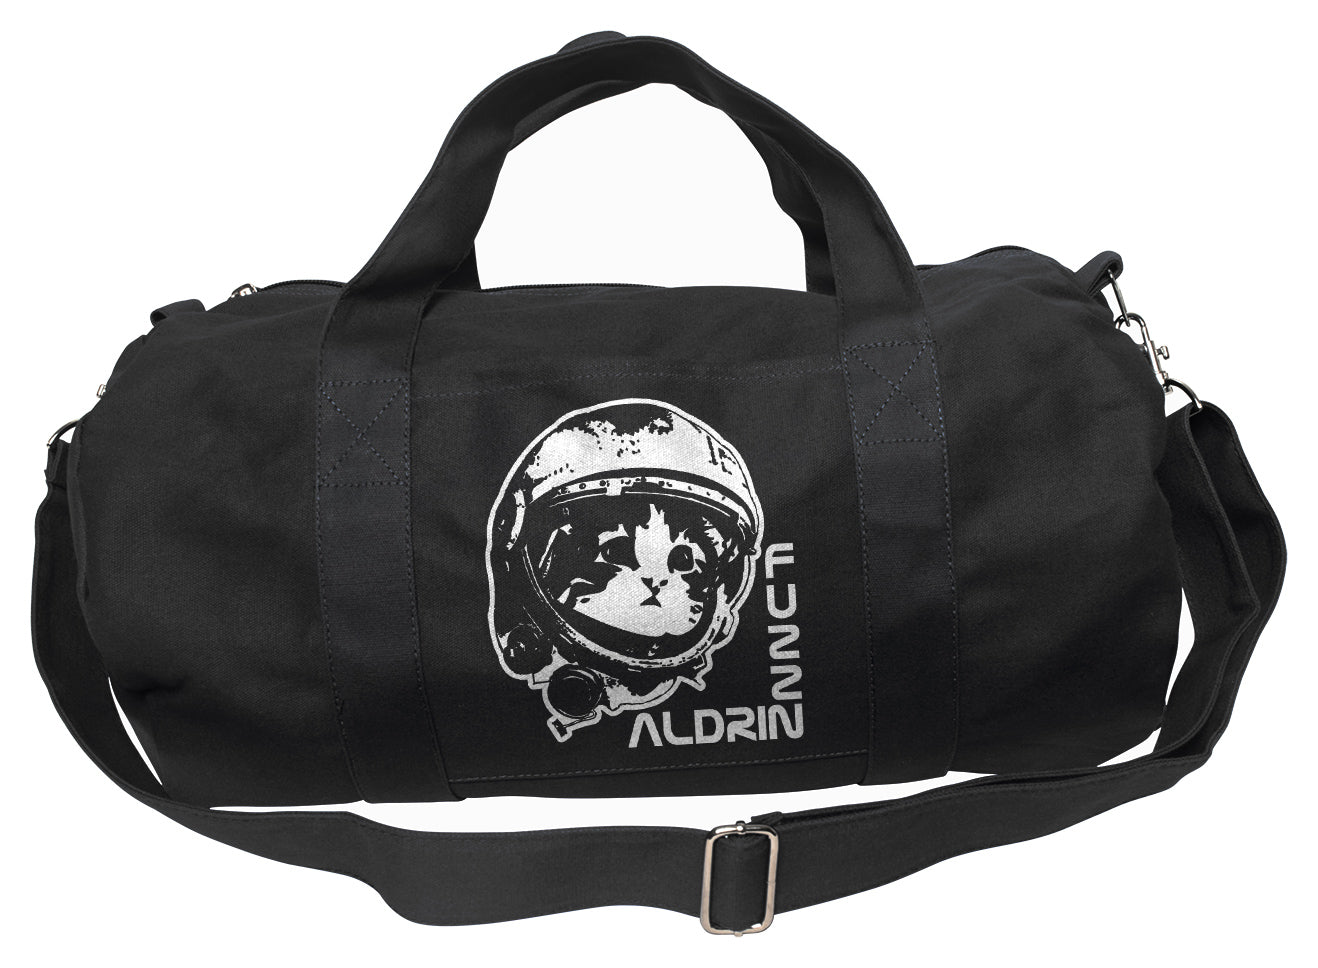 Fuzz Aldrin Duffel Bag - By Ex-Boyfriend